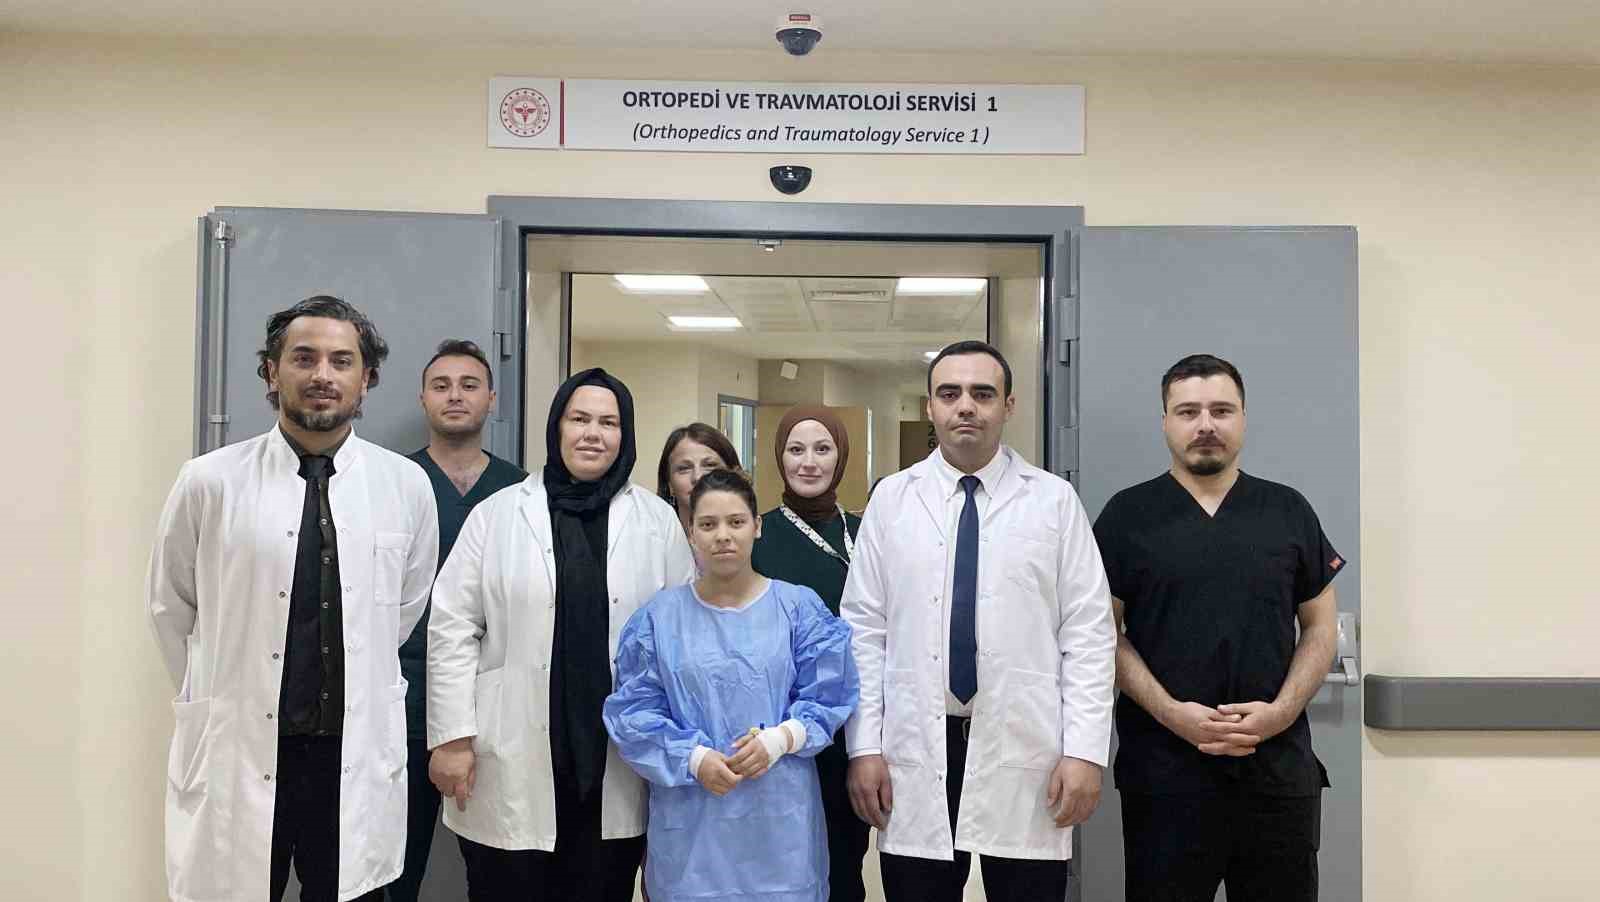 Konya’da 14 yaşındaki çocuğun kamburu ameliyatla düzeltildi
